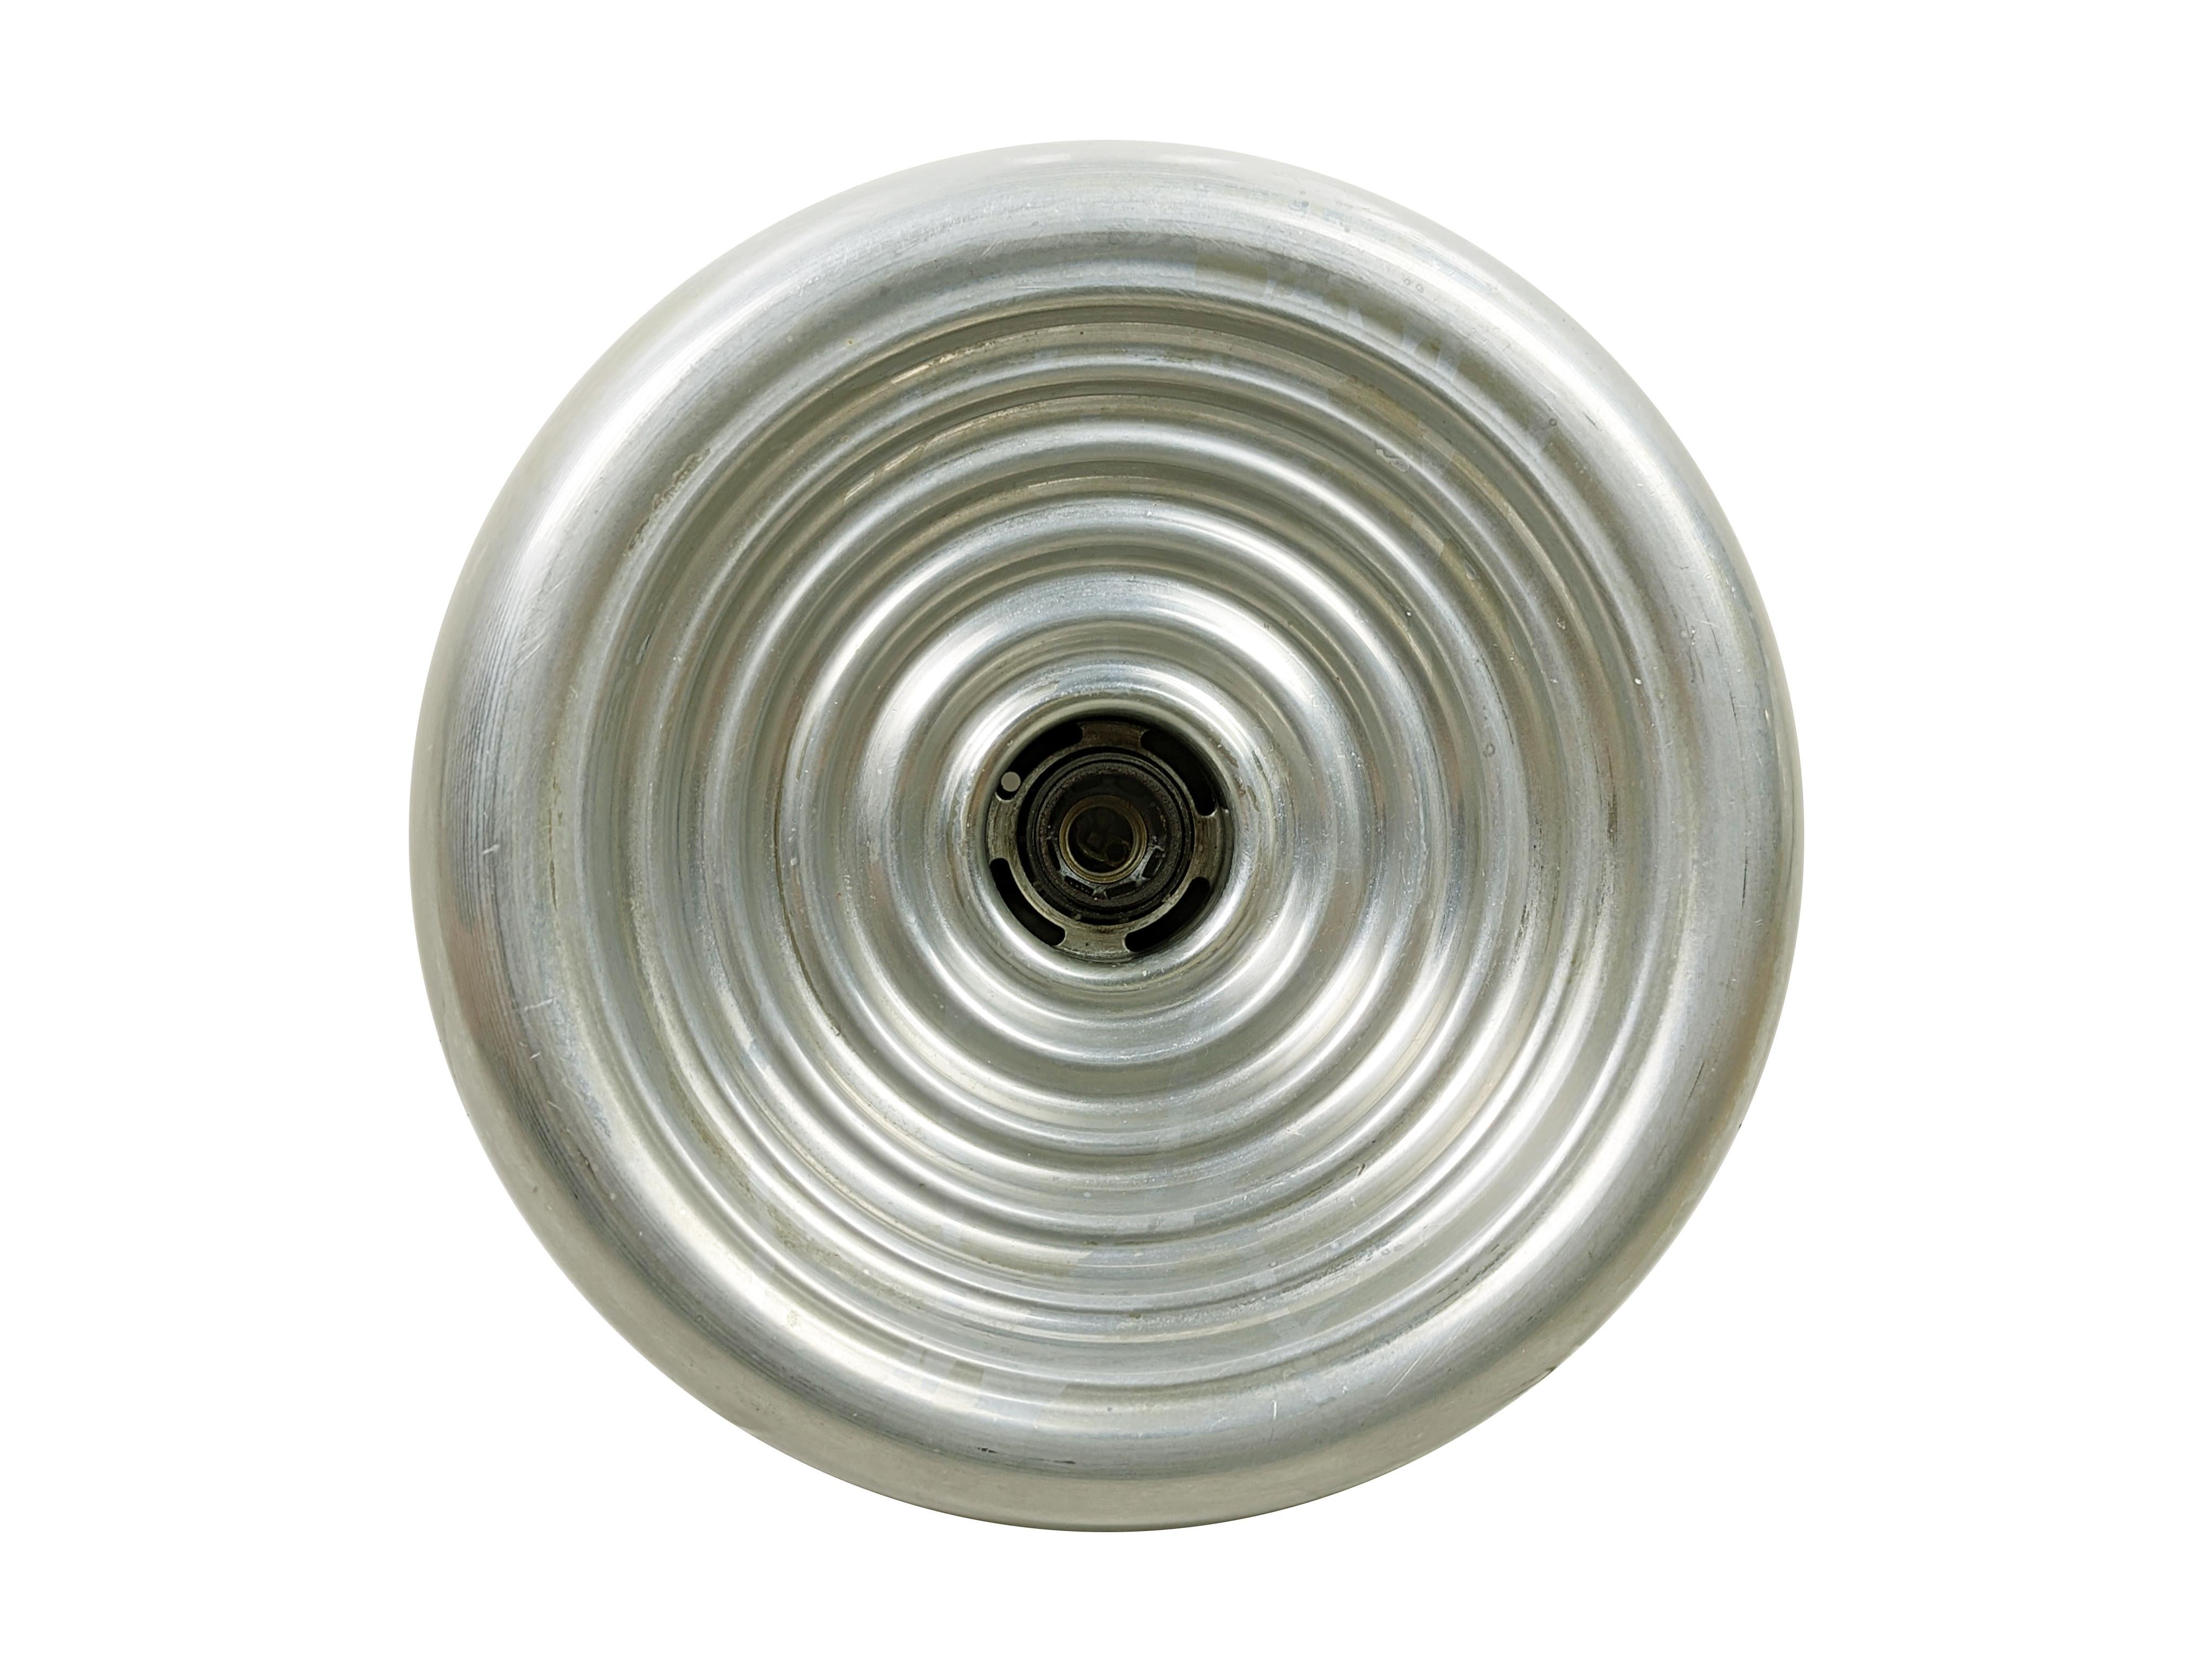 Diese Padina-Lampe kann als Wandleuchte oder als Deckenleuchte verwendet werden. Es ist aus einem silbernen Aluminiumgehäuse gefertigt.
Ausgestattet mit einer E27-Lampenfassung. Guter Zustand: Oxidation und Patina.